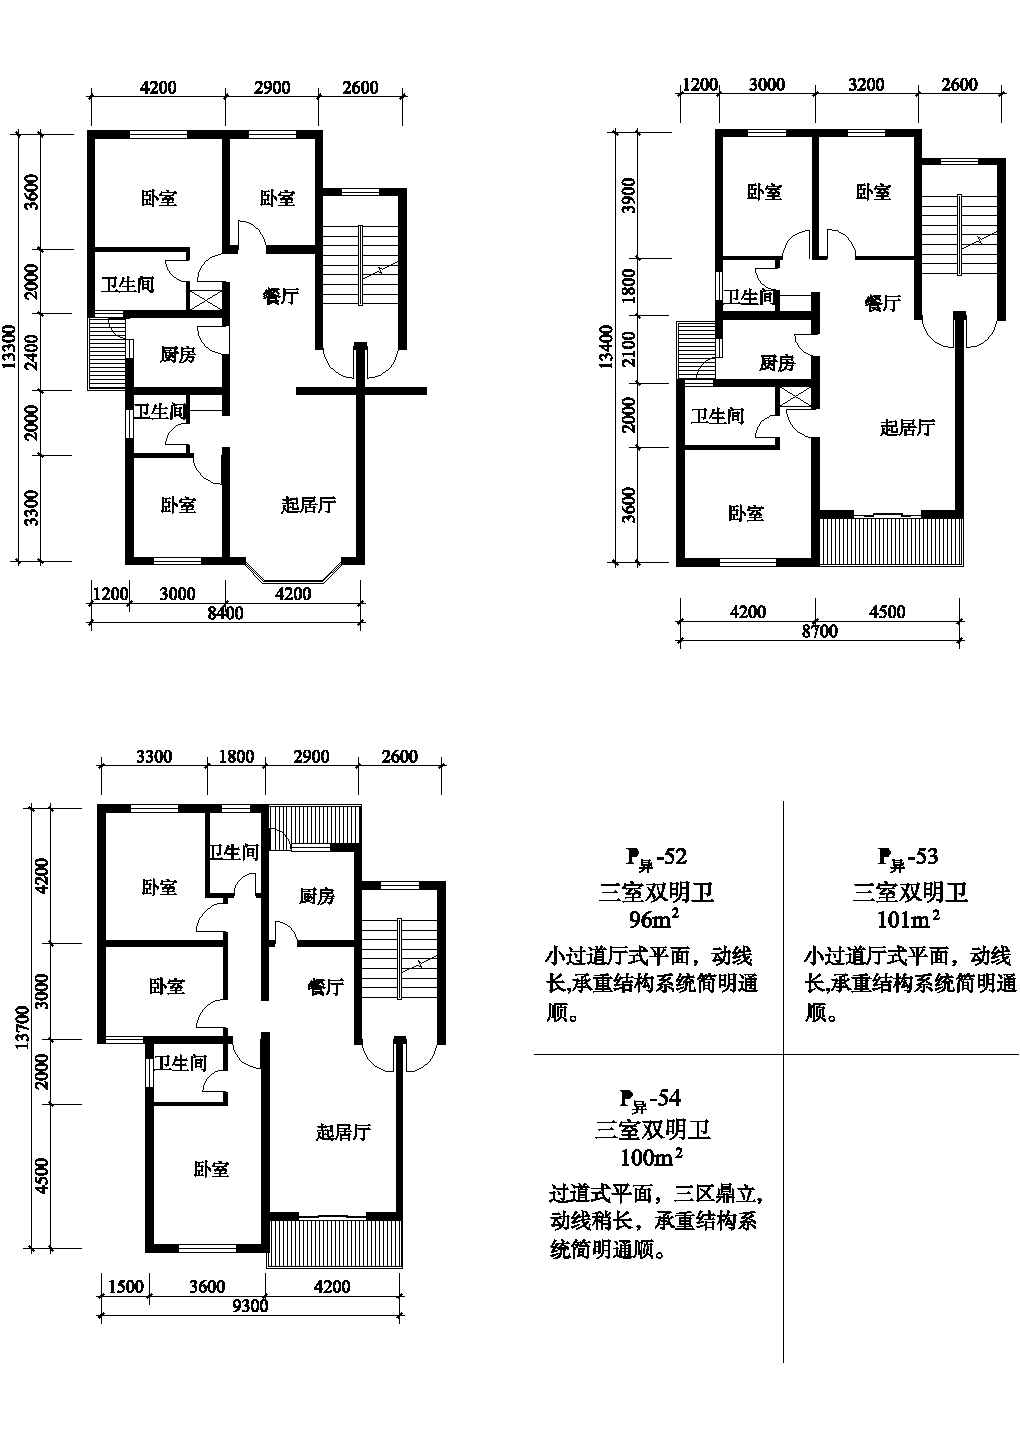 三室96/101/100平方单元式住宅户型平面图纸